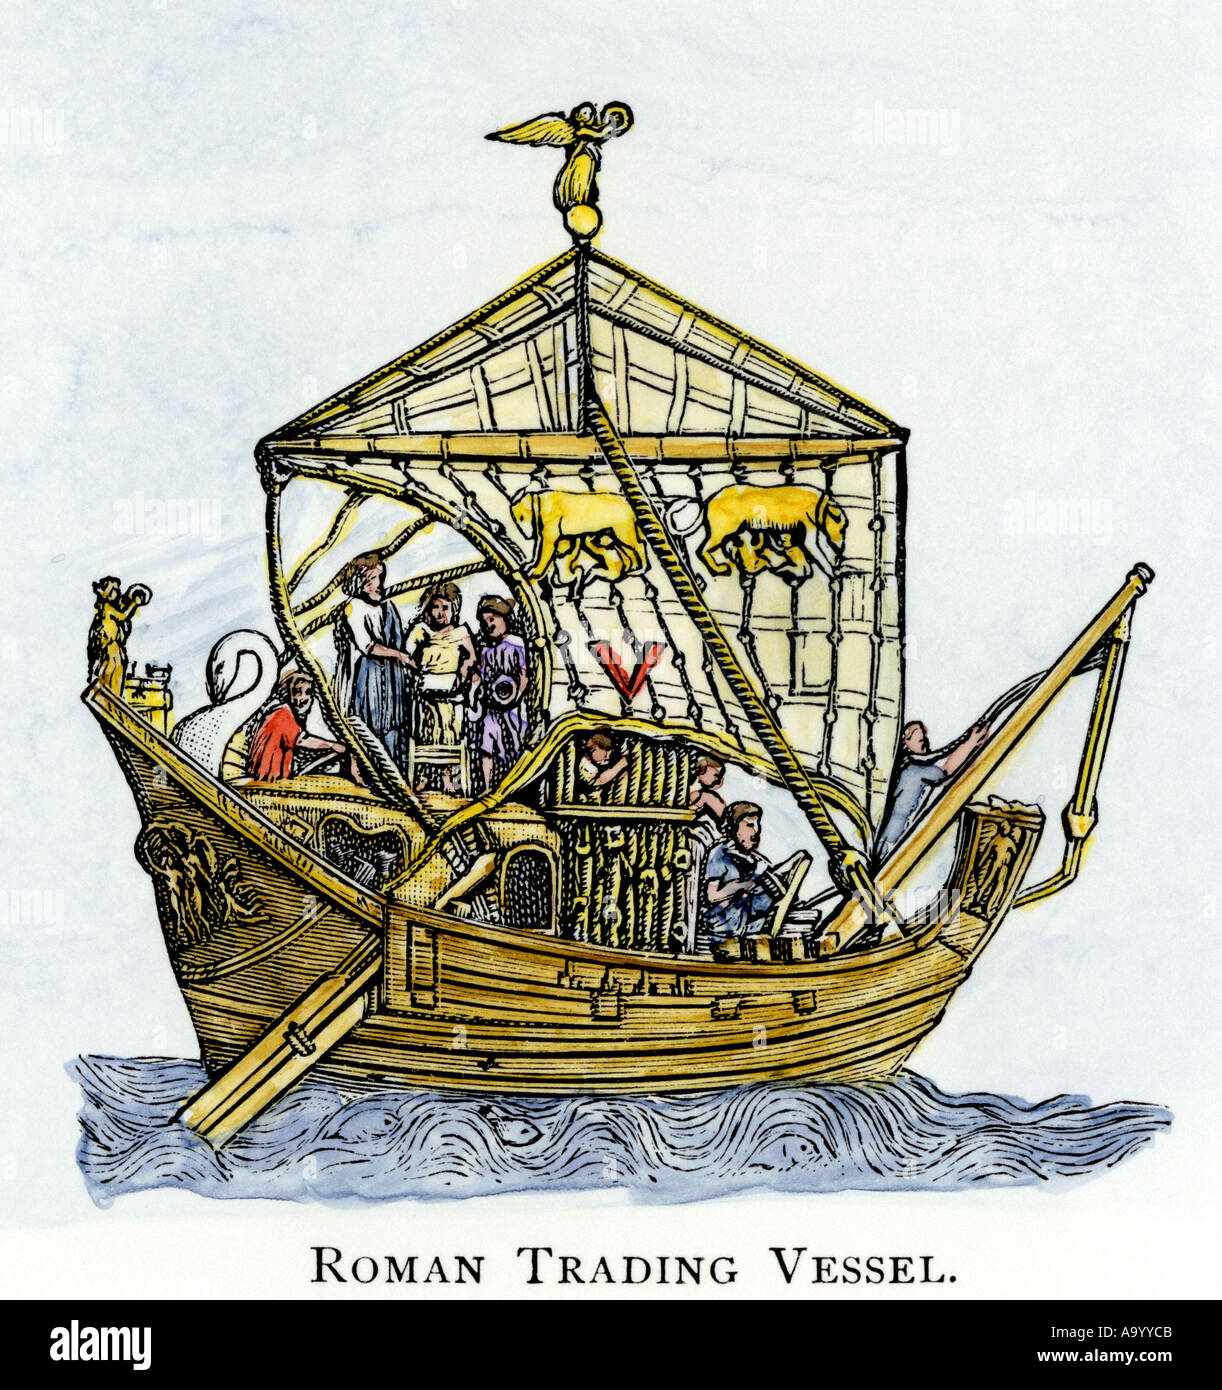 Navire marchand Romain ancien avec un gouvernail. À la main, gravure sur bois Banque D'Images